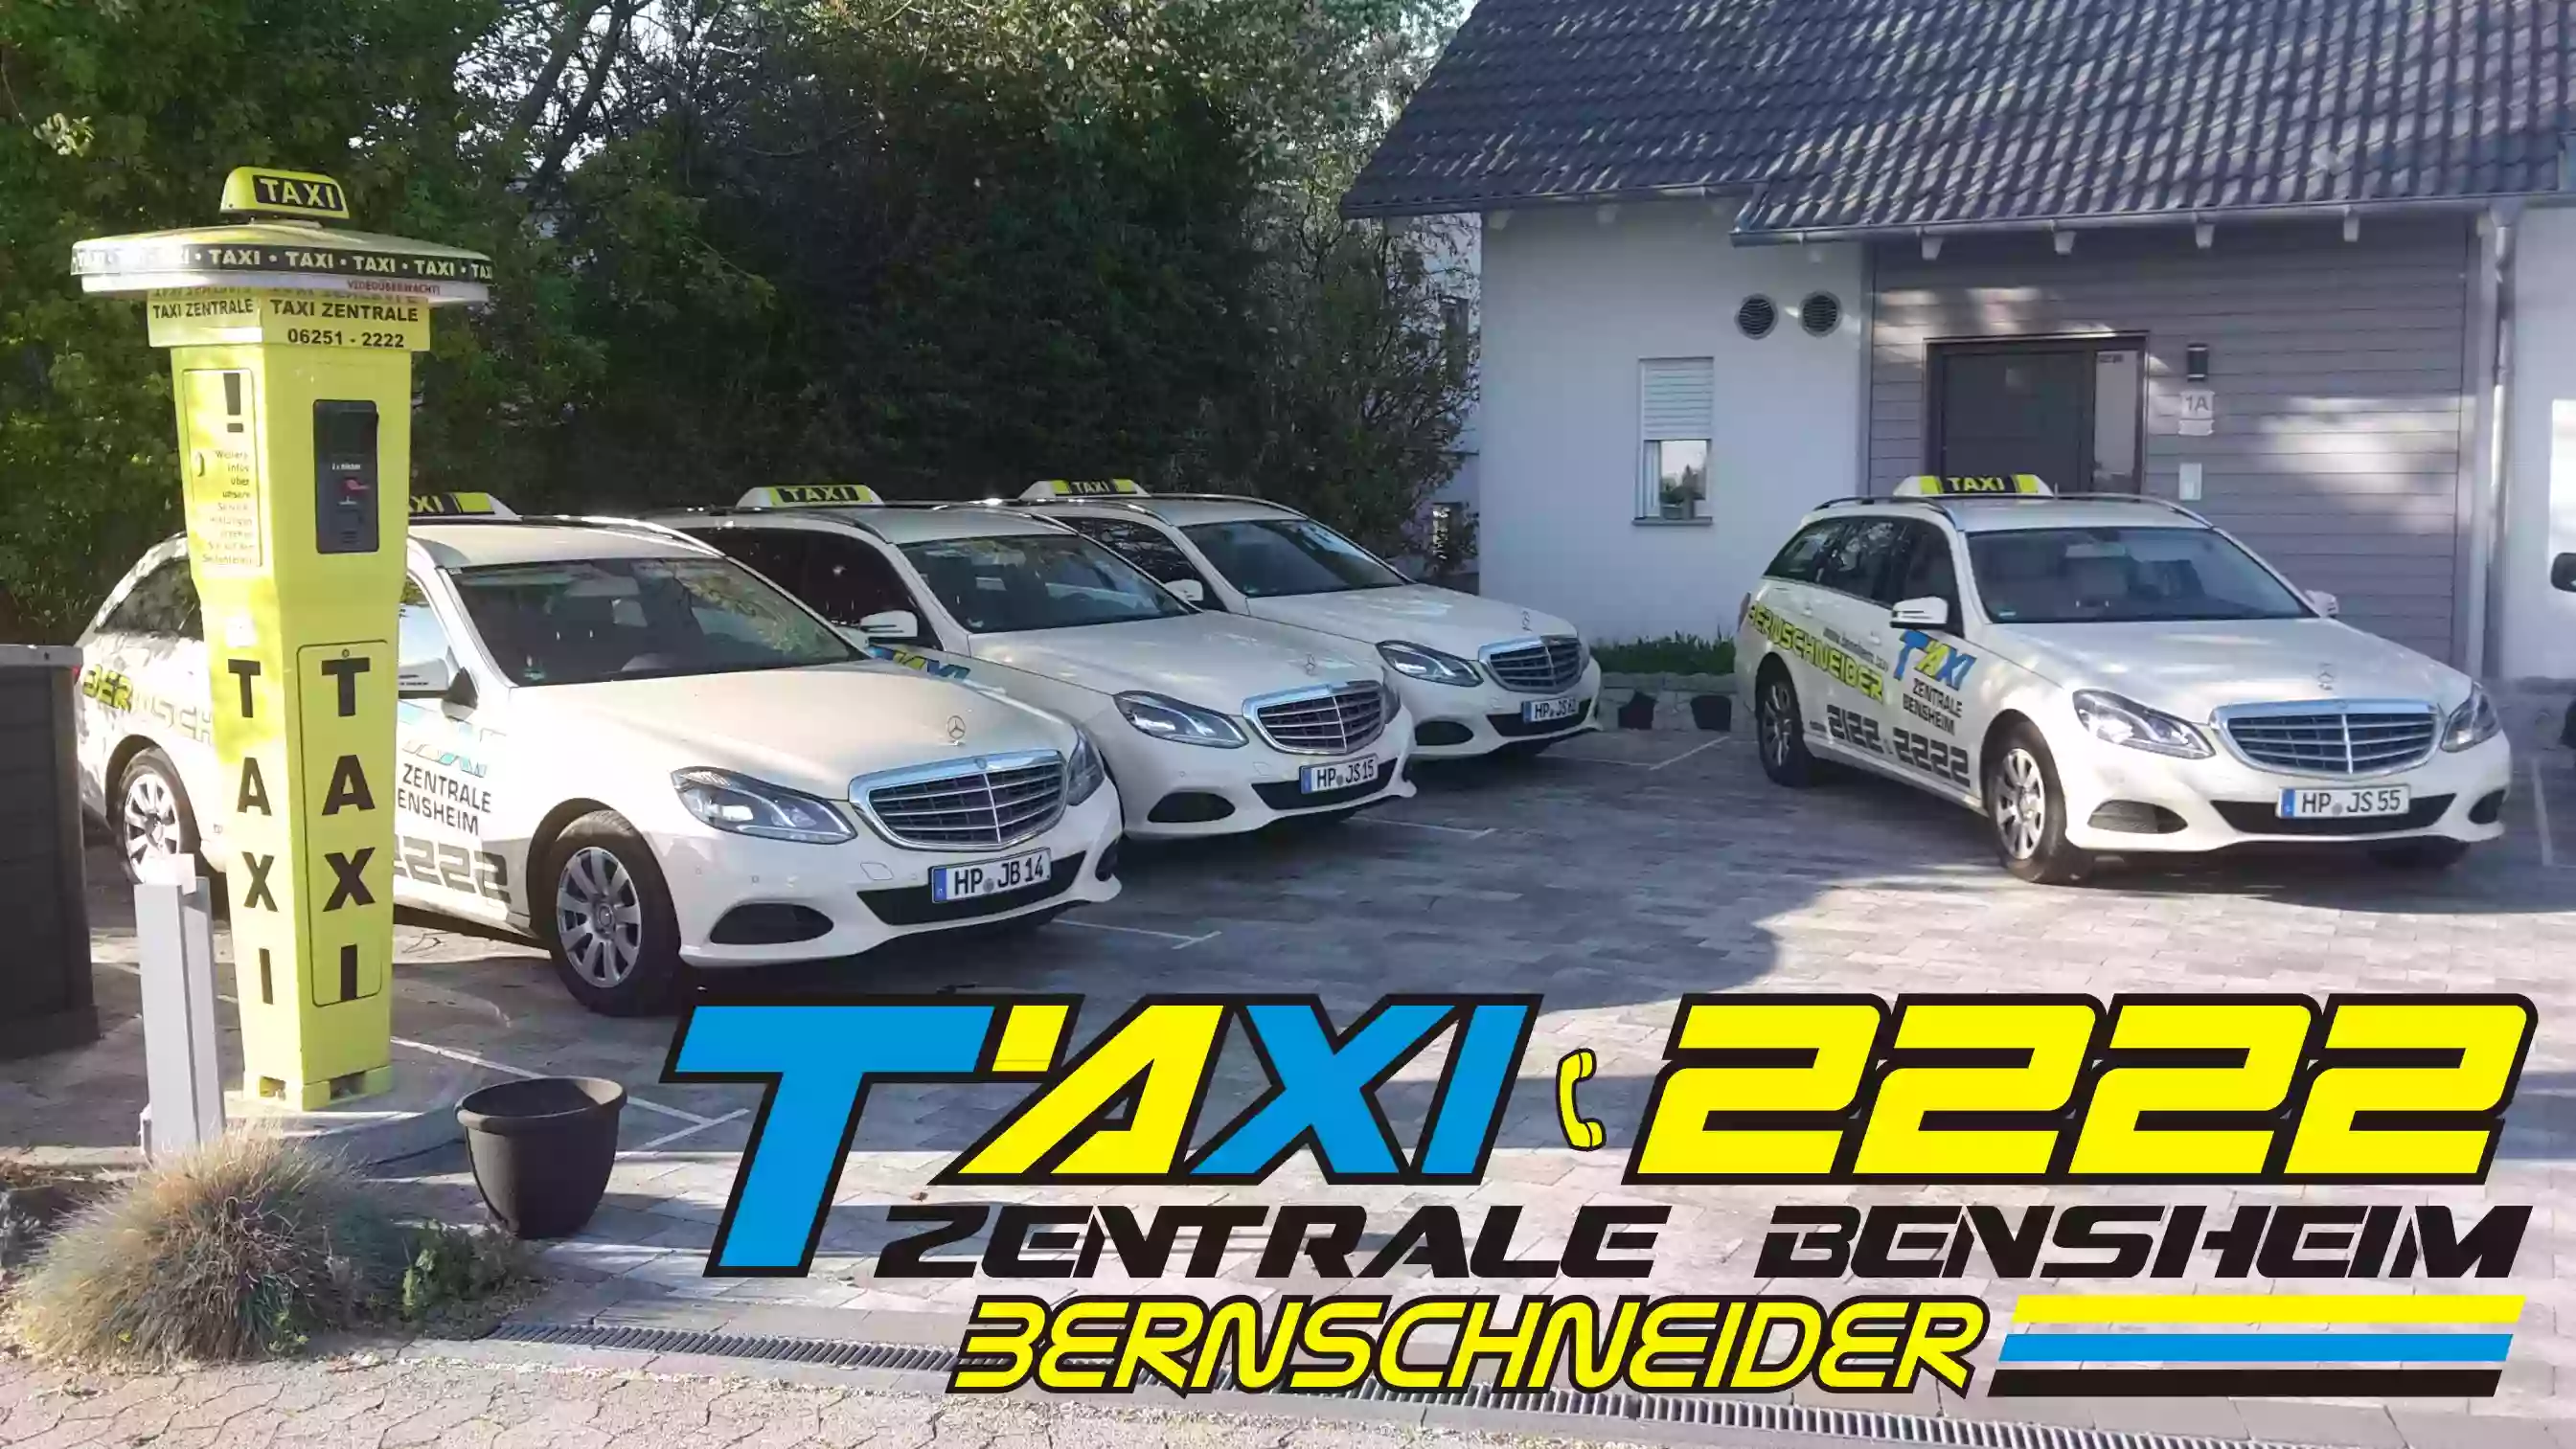 Taxi Bernschneider - Taxi Zentrale Bensheim